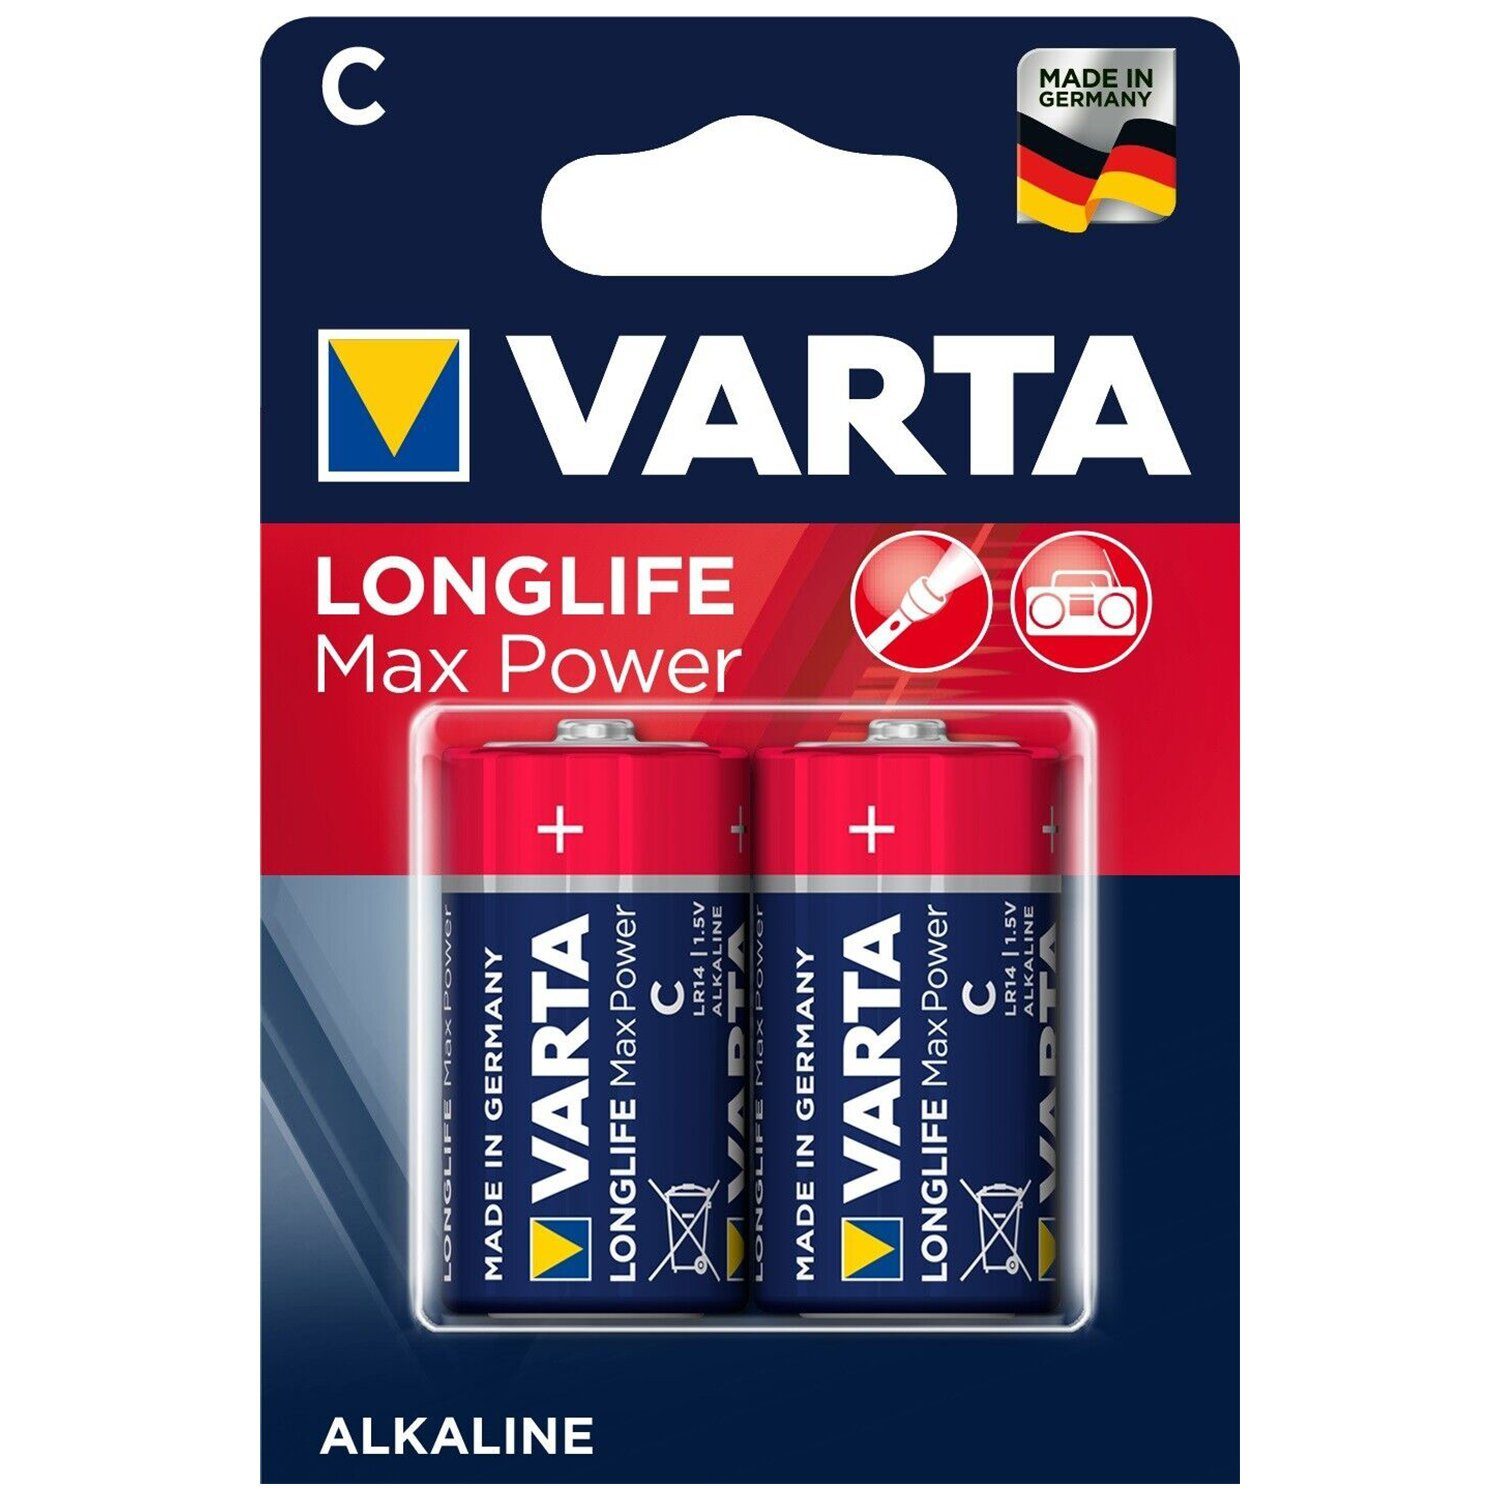 VARTA VARTA Longlife Macro Blister Power C Max 4714 2er Einwegbatterie Batterie